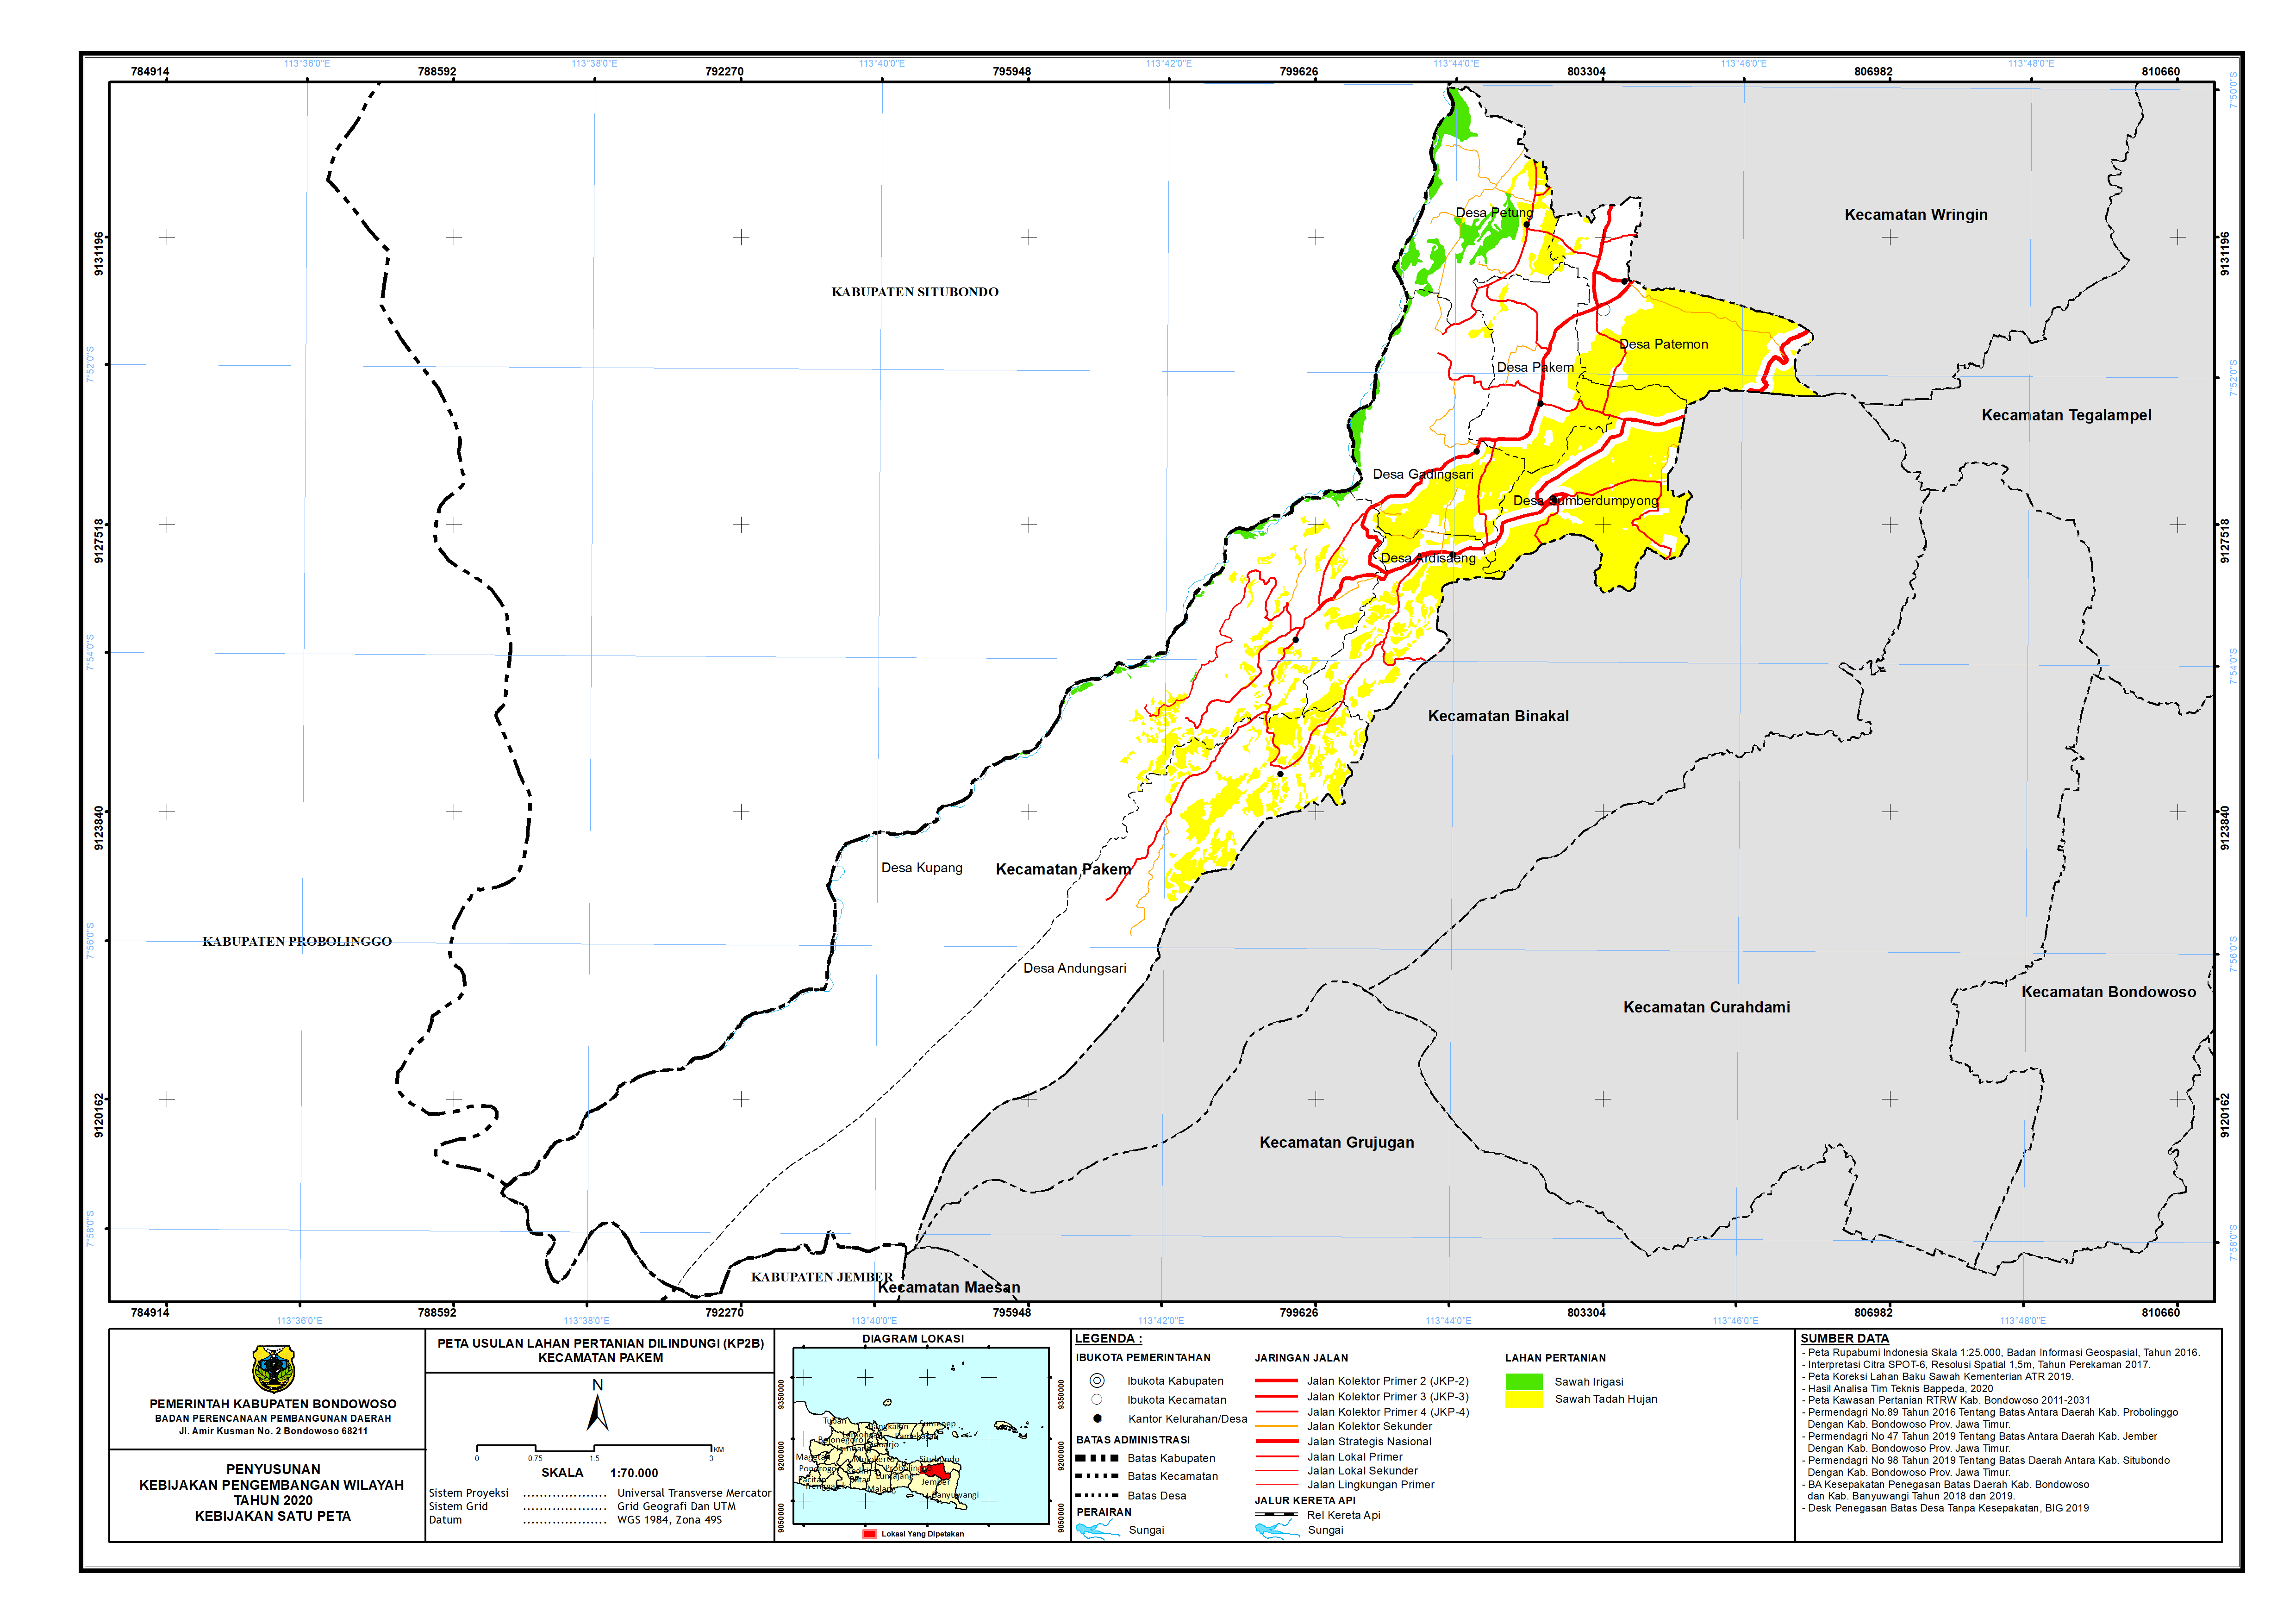 Peta Usulan Lahan Pertanian  Dilindungi Kecamatan Pakem.png